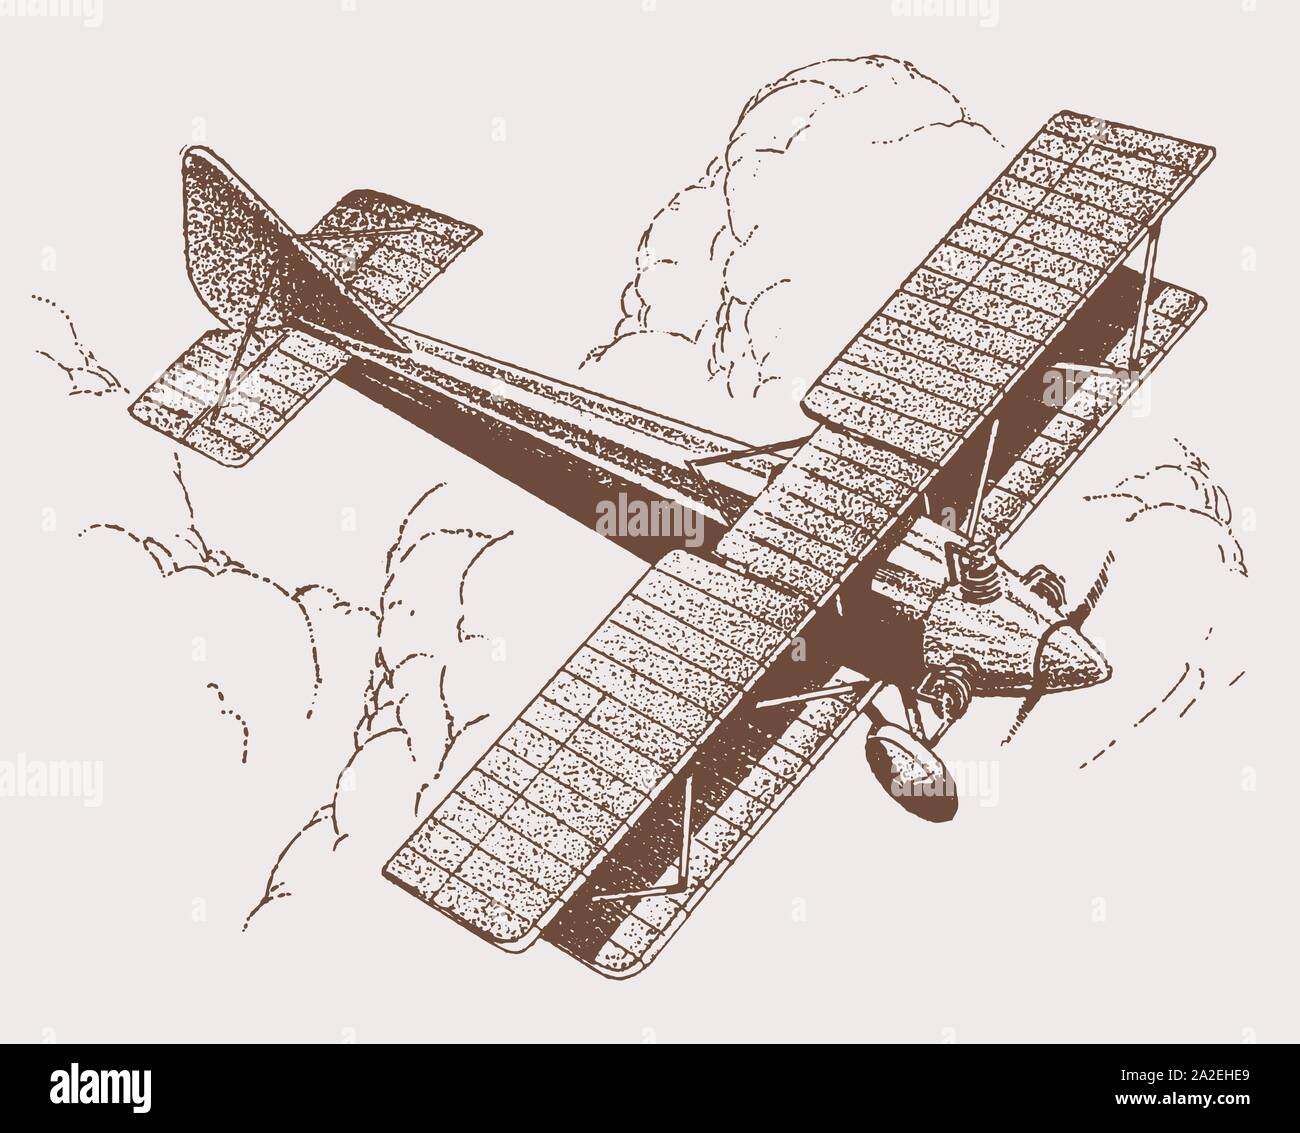 Plan historique avec des ailes repliables en vue supérieure, volant au-dessus de gros Cumulus nuages. Après une illustration la lithographie du début du xxe siècle Illustration de Vecteur